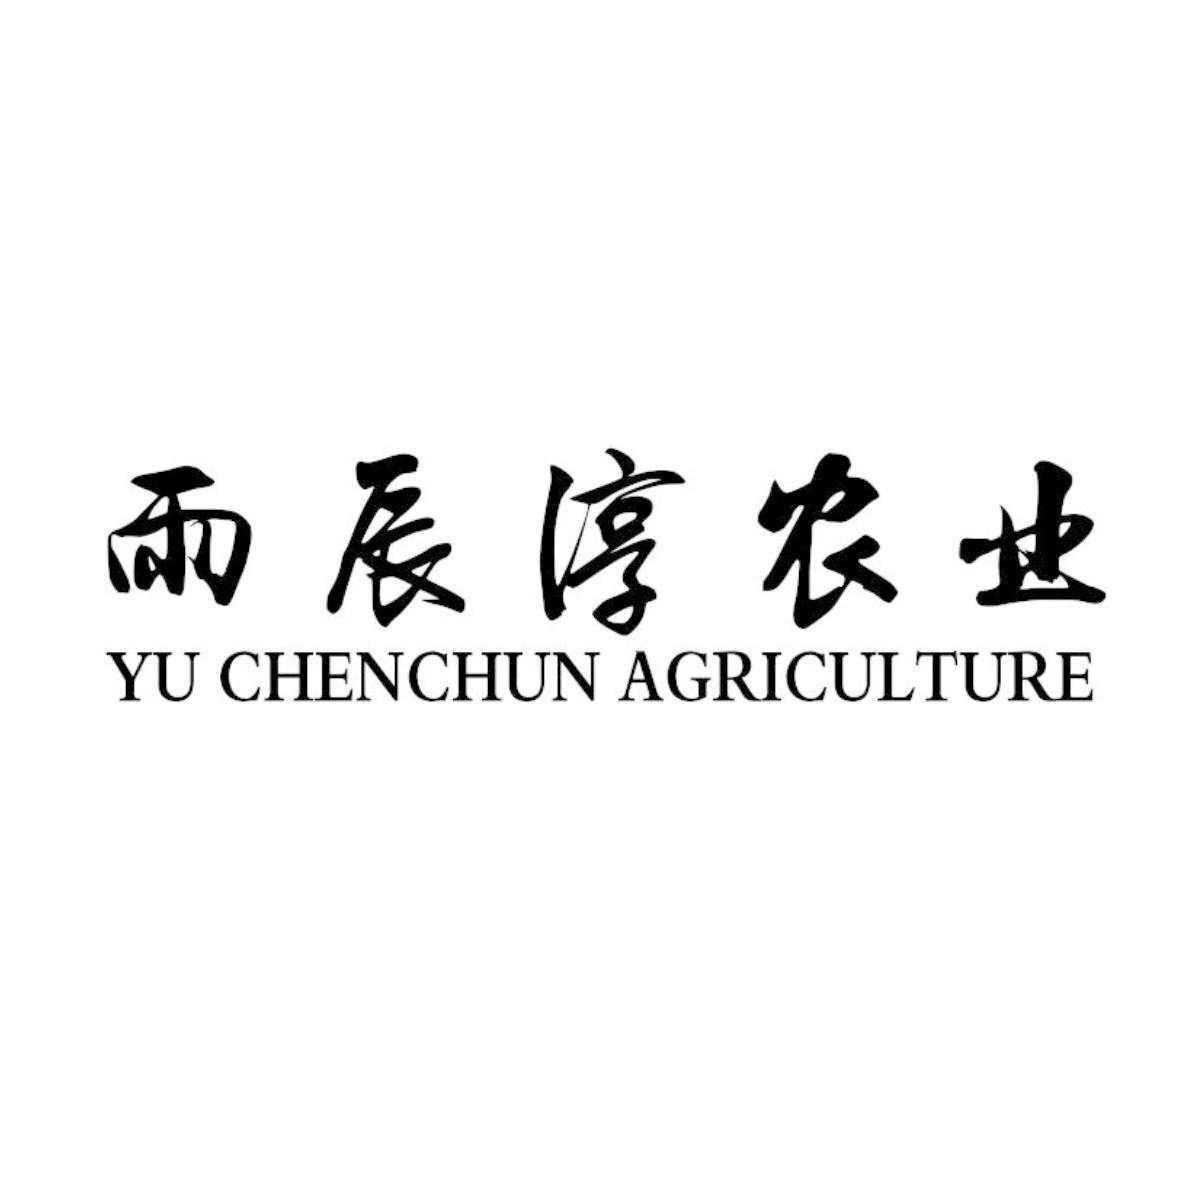 yuchen客户端的包huangyuchenzhuoheiregular